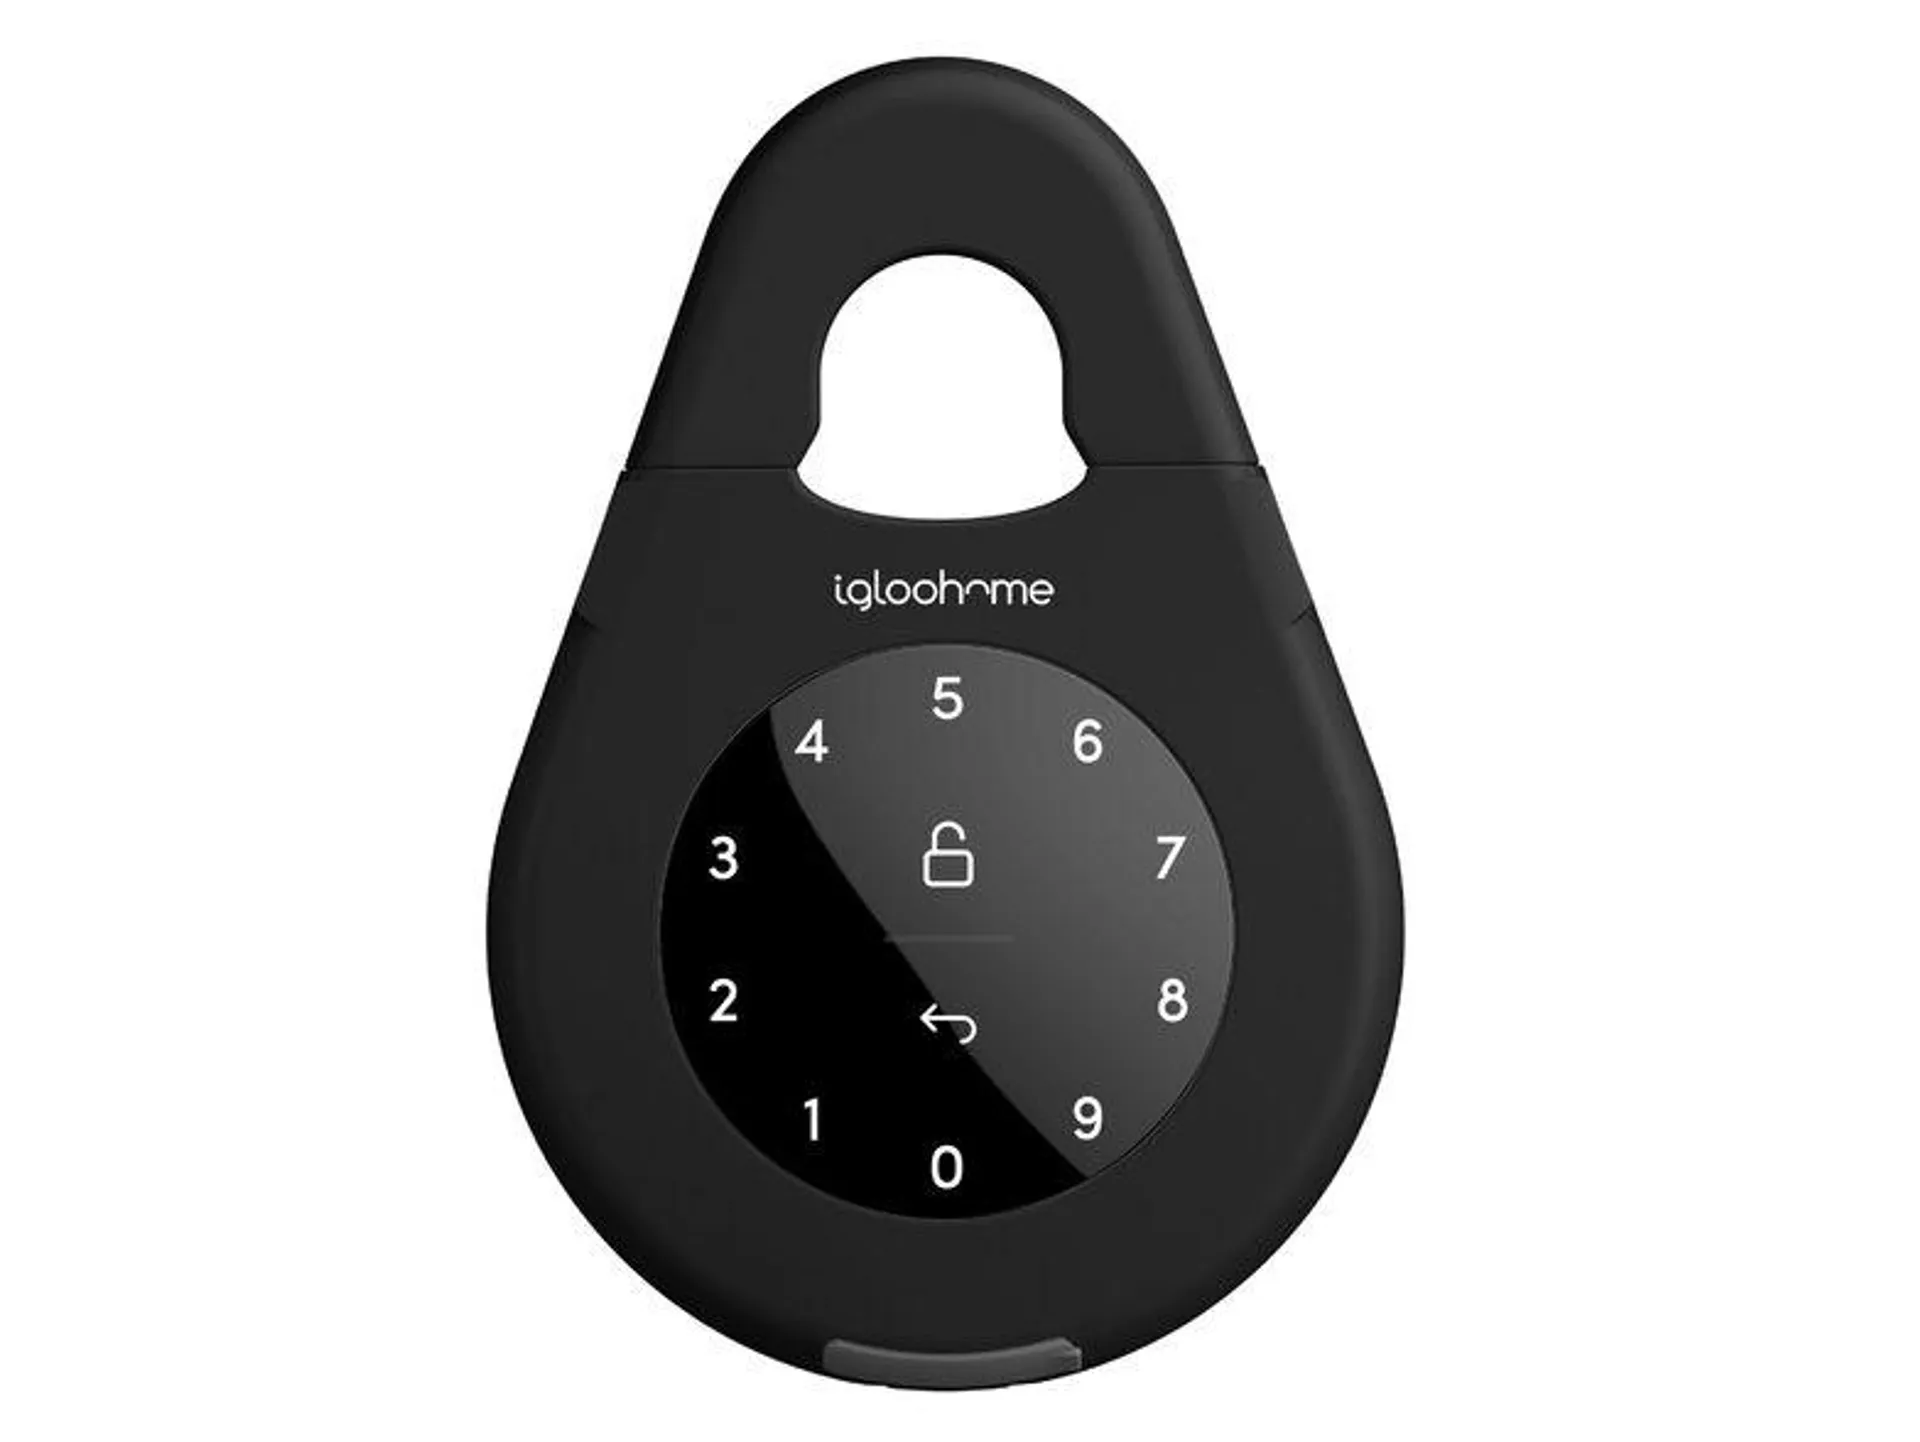 igloohome Smart Keybox 3 smarte Aufbewahrungsbox, mit Bluetooth oder Pin Code